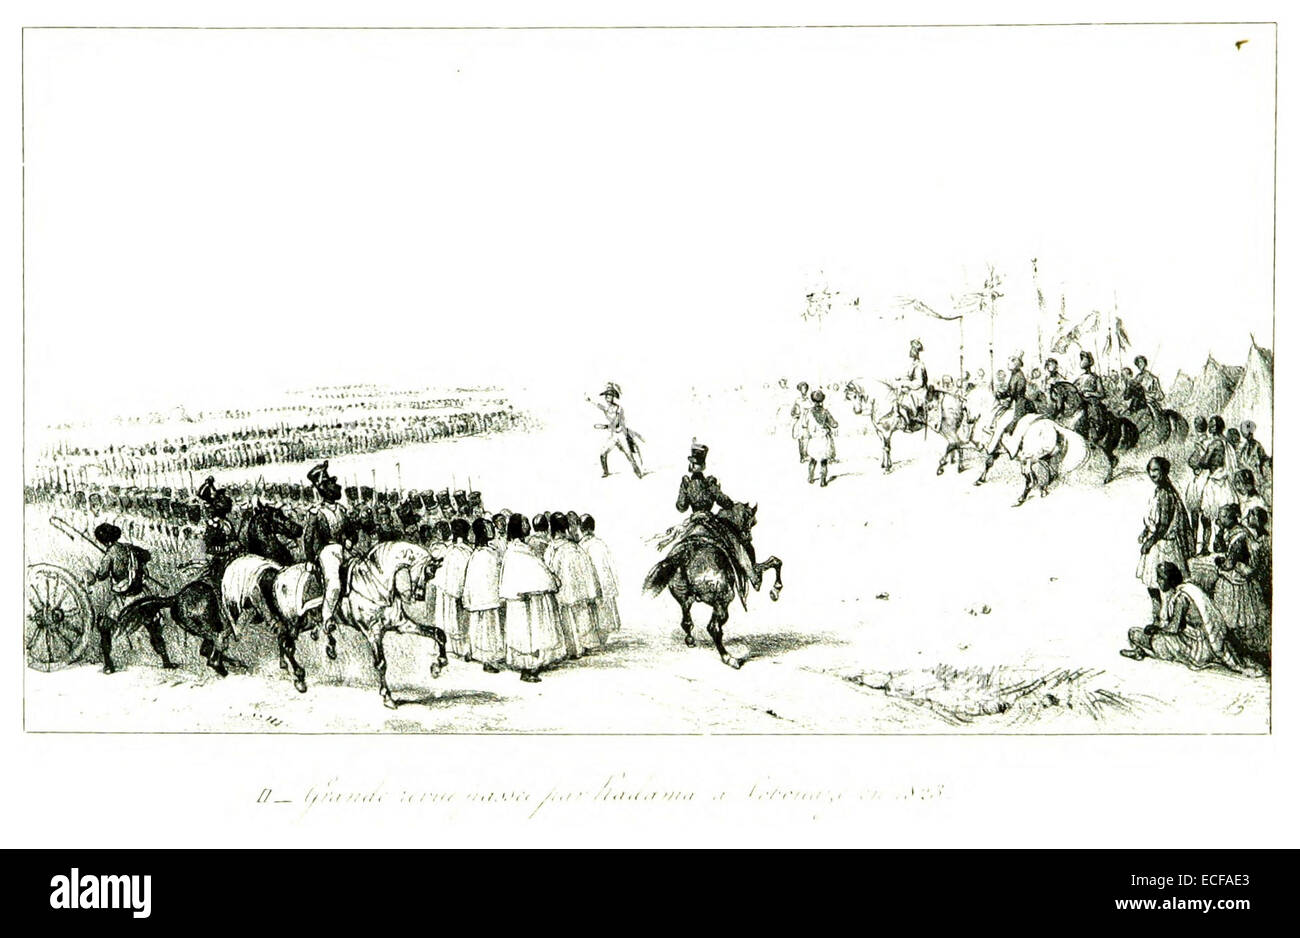 LEGUEVEL DE LACOMBE(1840) p261 Le roi Radama Ier en passant revue ses troupes en 1825 Foto Stock